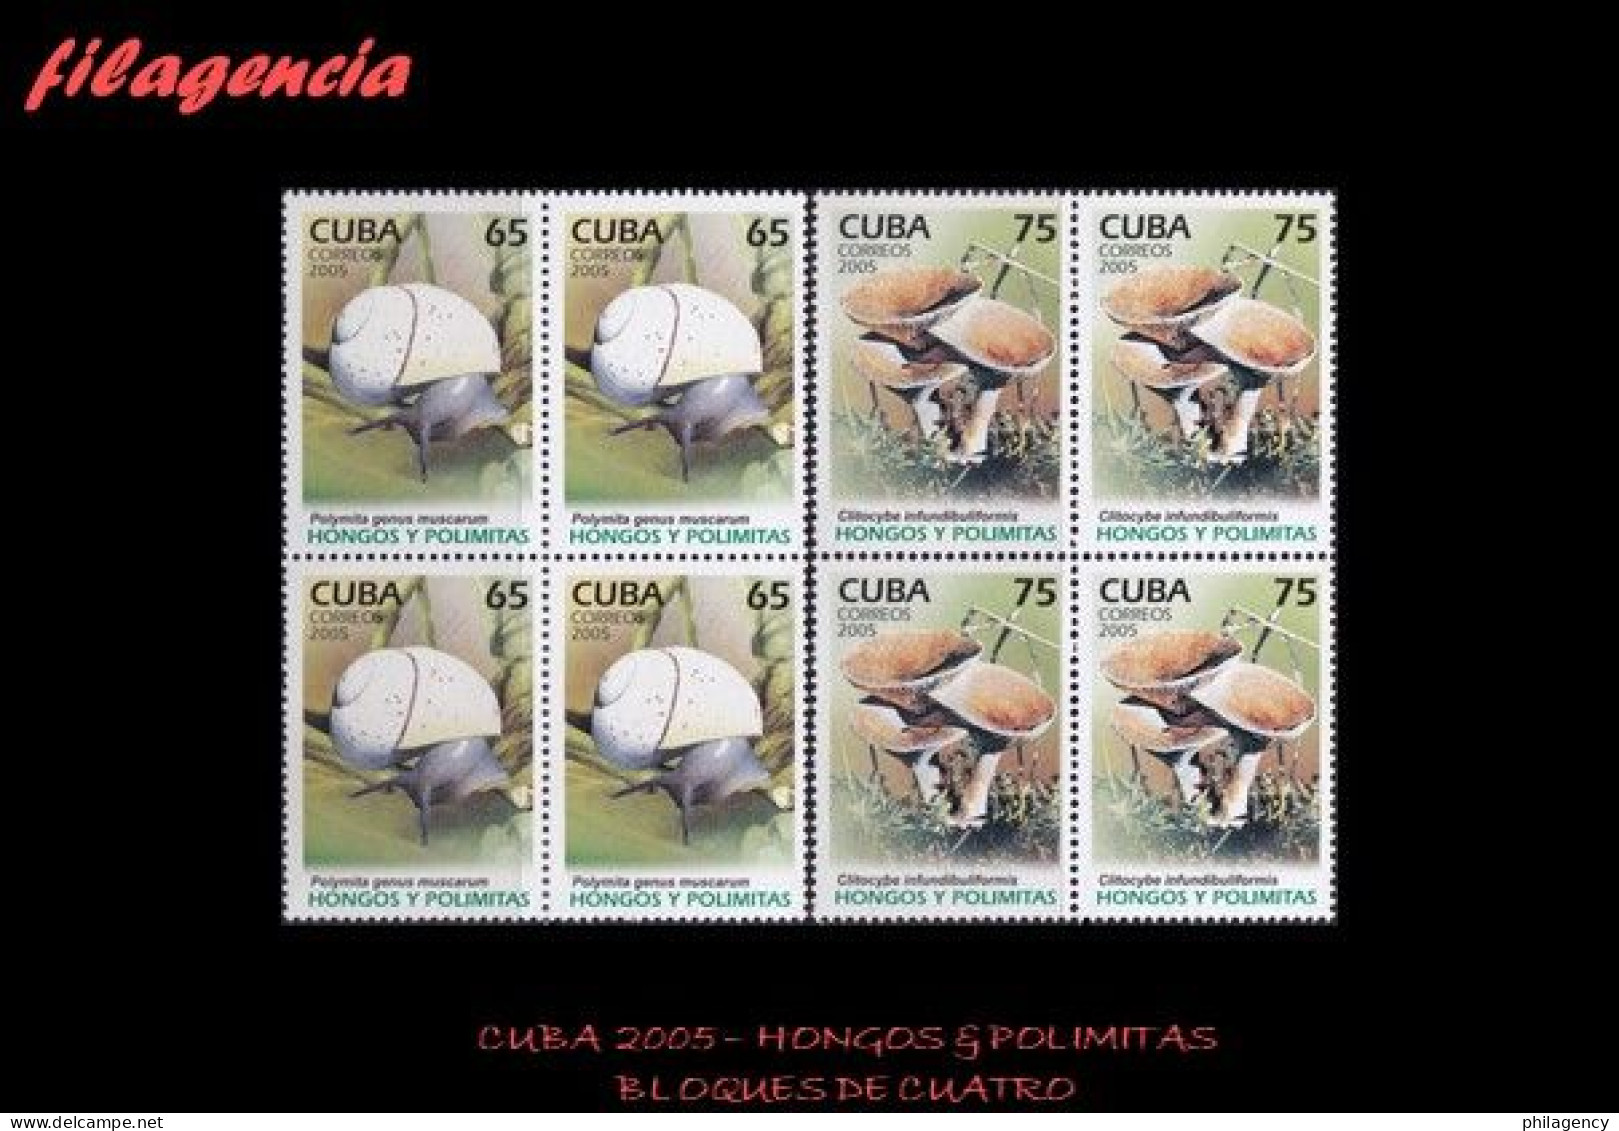 CUBA. BLOQUES DE CUATRO. 2005-36 FLORA & FAUNA. HONGOS & POLIMITAS - Nuevos